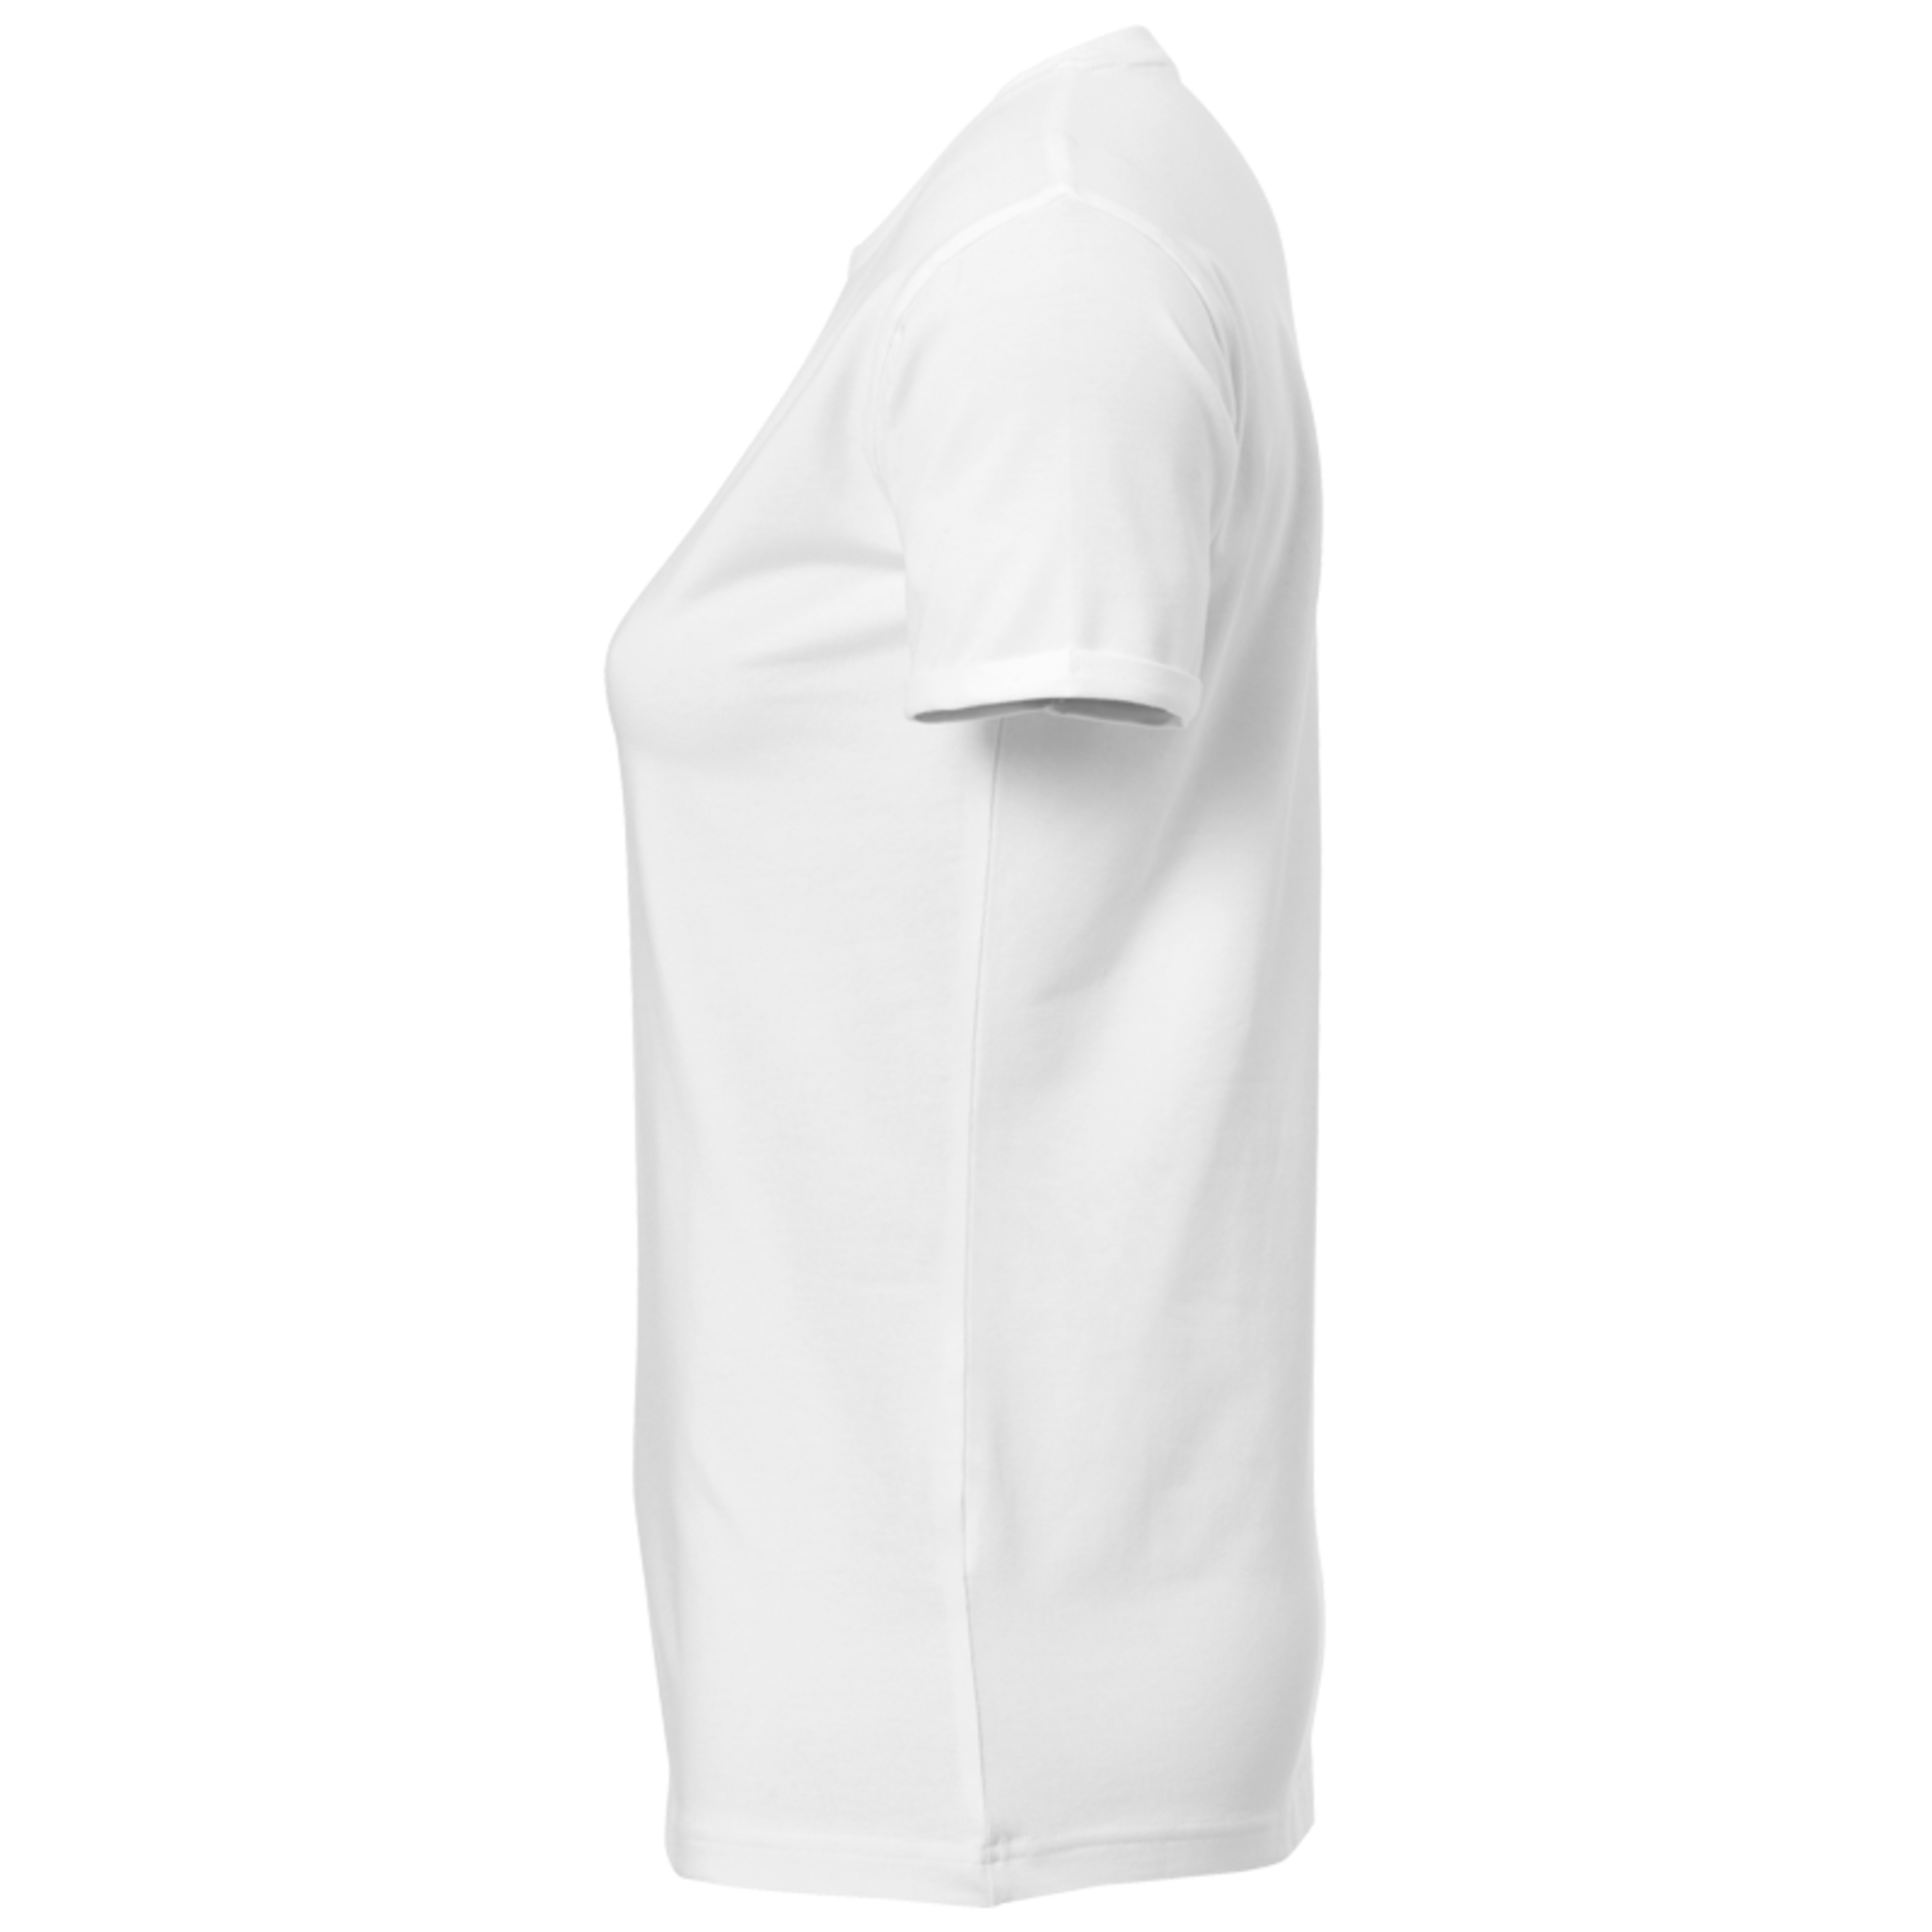 Core 2.0 T-shirt Women Blanco Kempa - blanco - Core 2.0 T-shirt Women Blanco Kempa  MKP